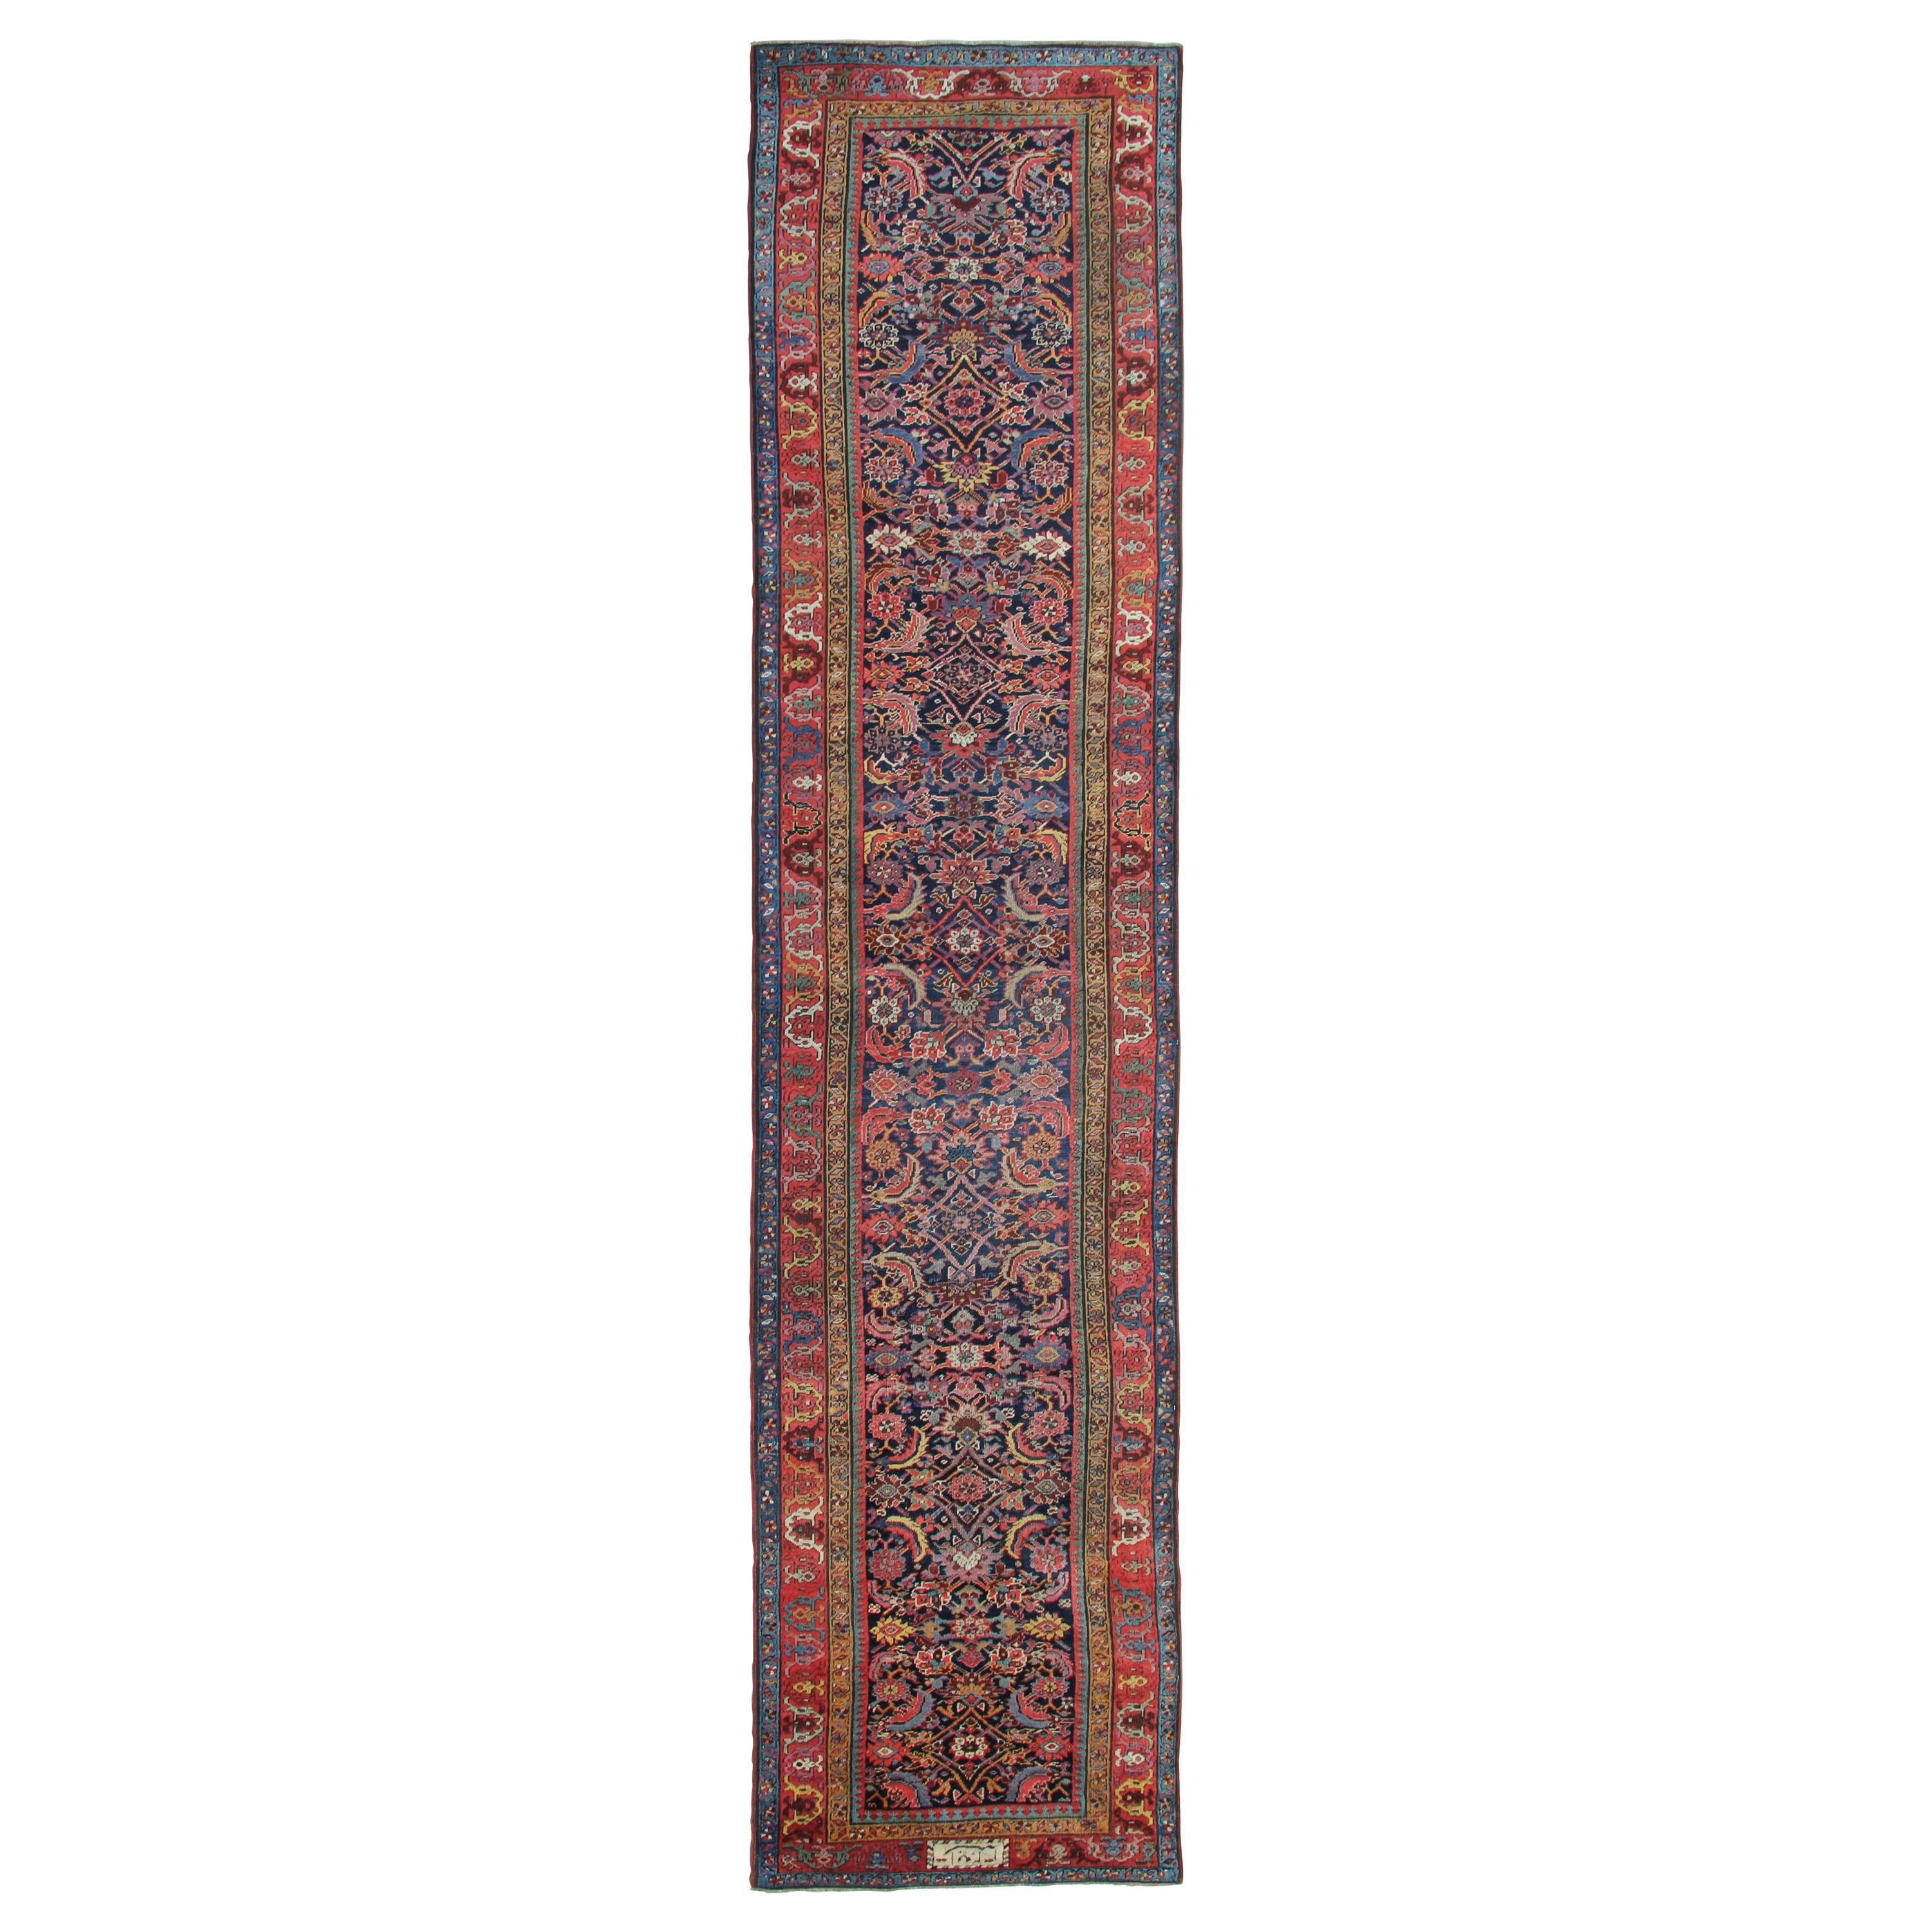 Seltene Antike Teppich Kaukasische Läufer Hand Made Teppich Wohnzimmer Teppiche Treppe Läufer